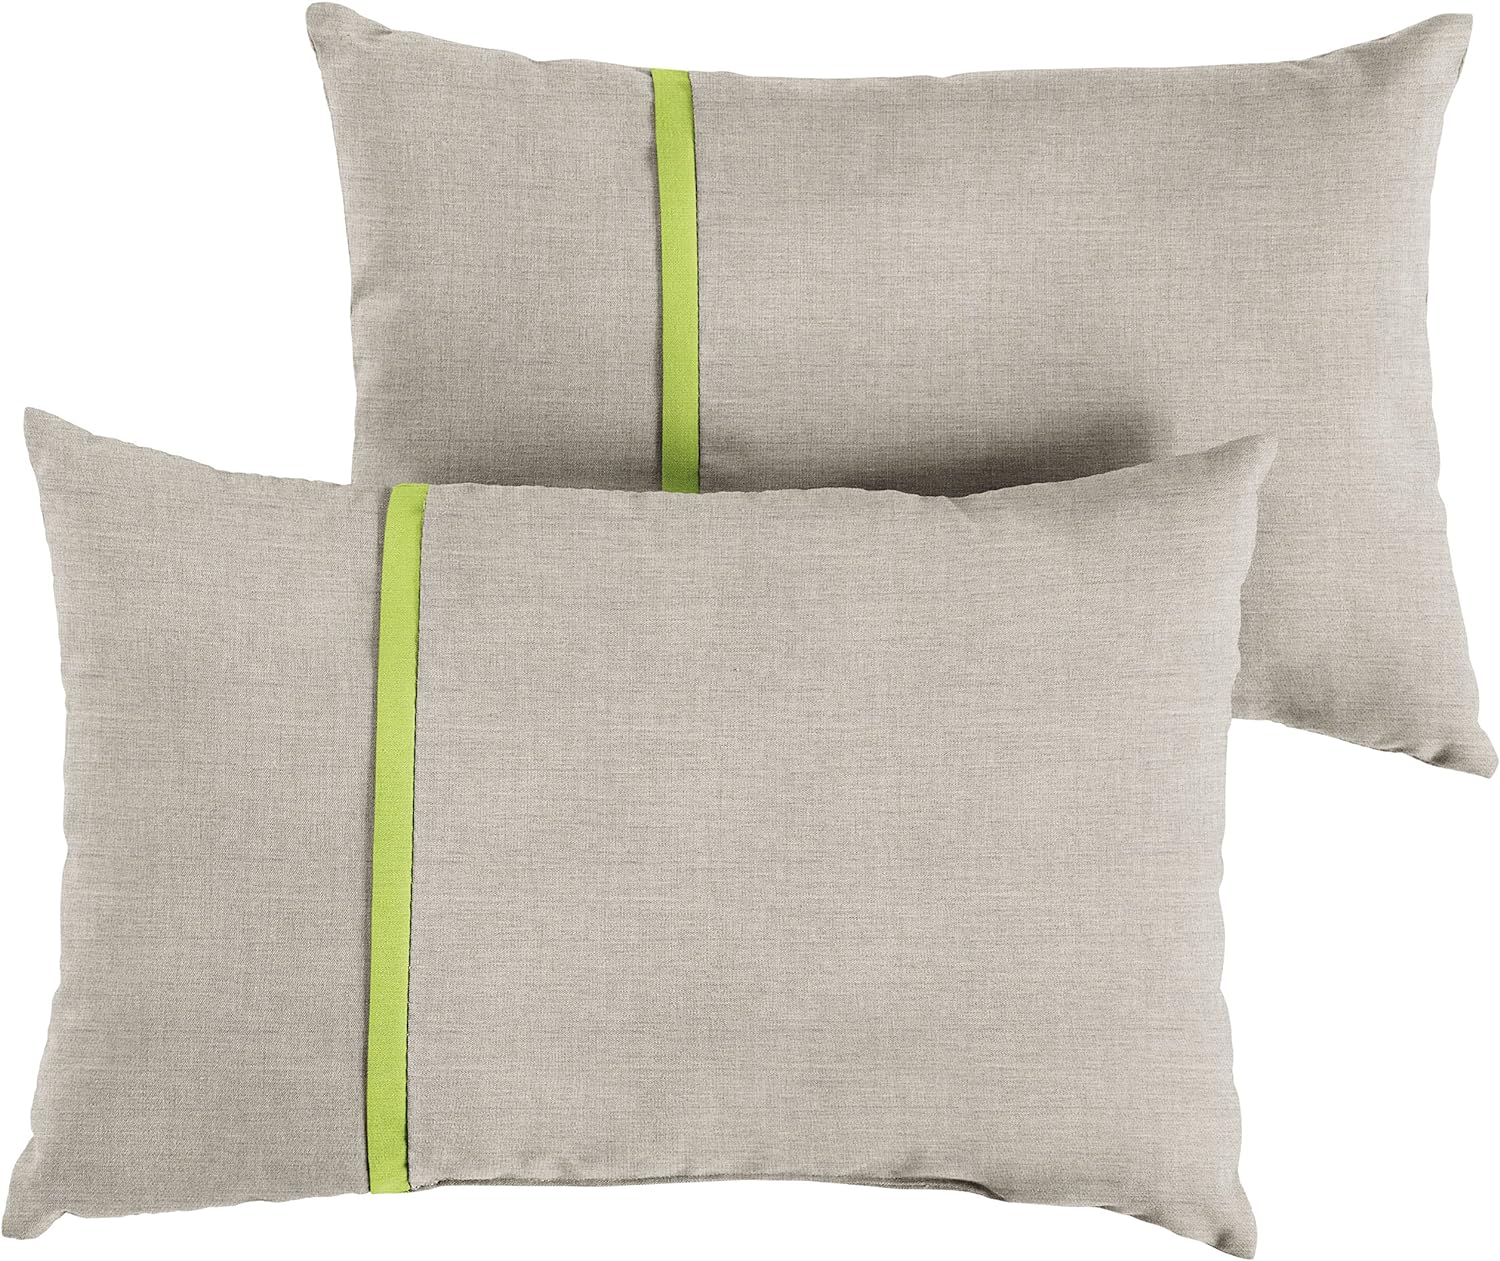 Sorra Home Indoor Outdoor Sunbrella Lumbar Pillows, Set of 2, 12 x 18, Silver Grey & Bright Green